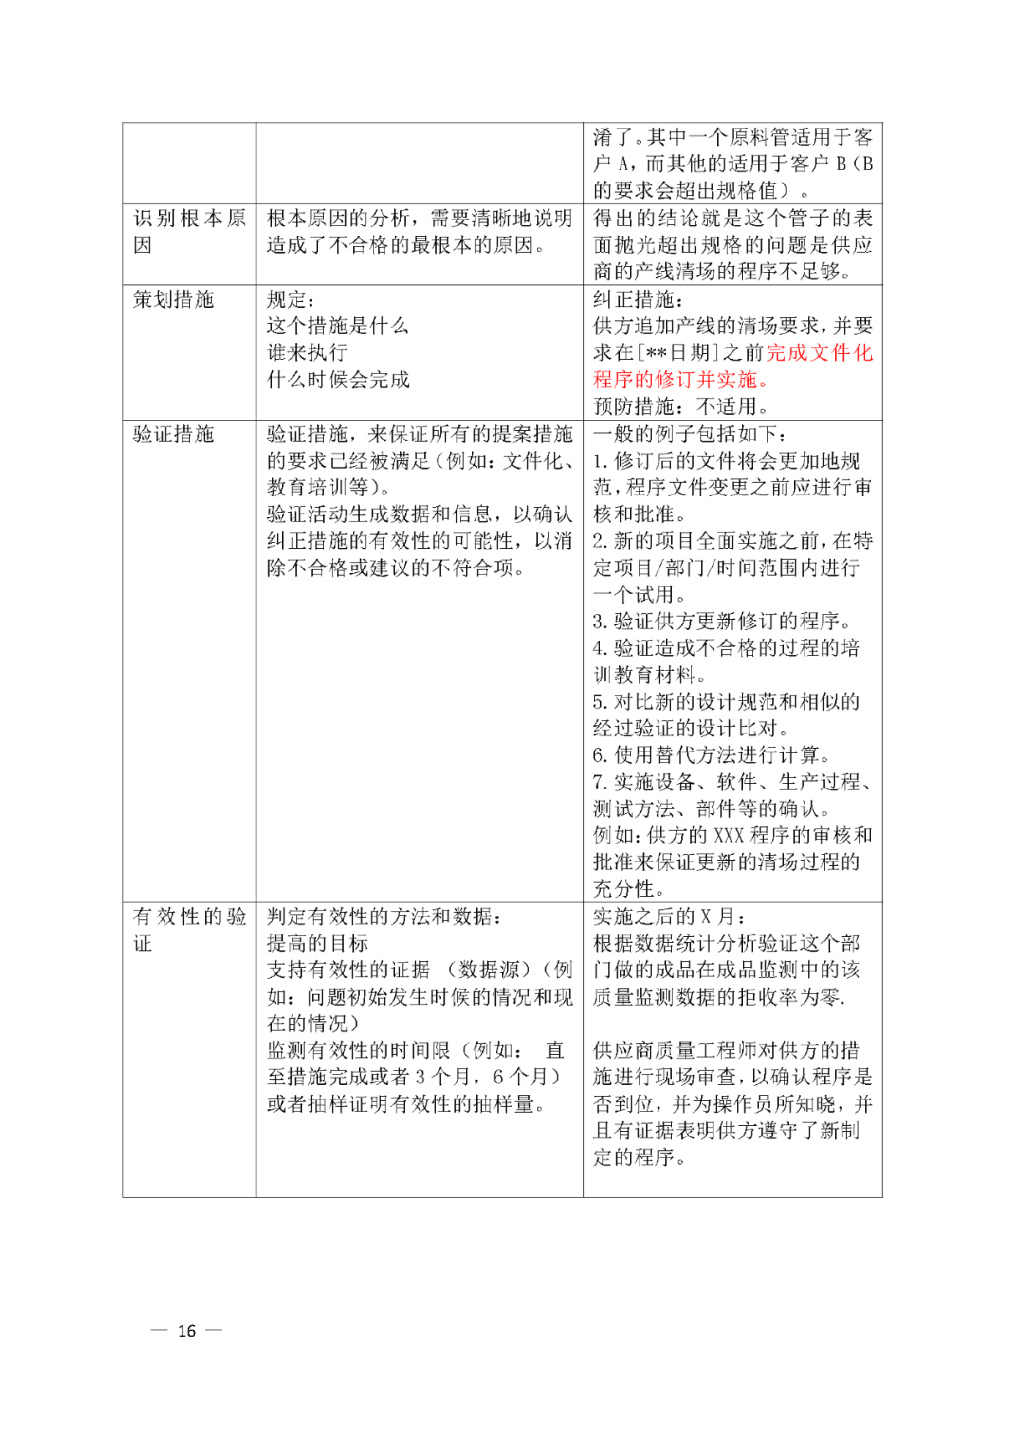 【安徽】发布医疗器械质量管理分析改进工作指南(图16)